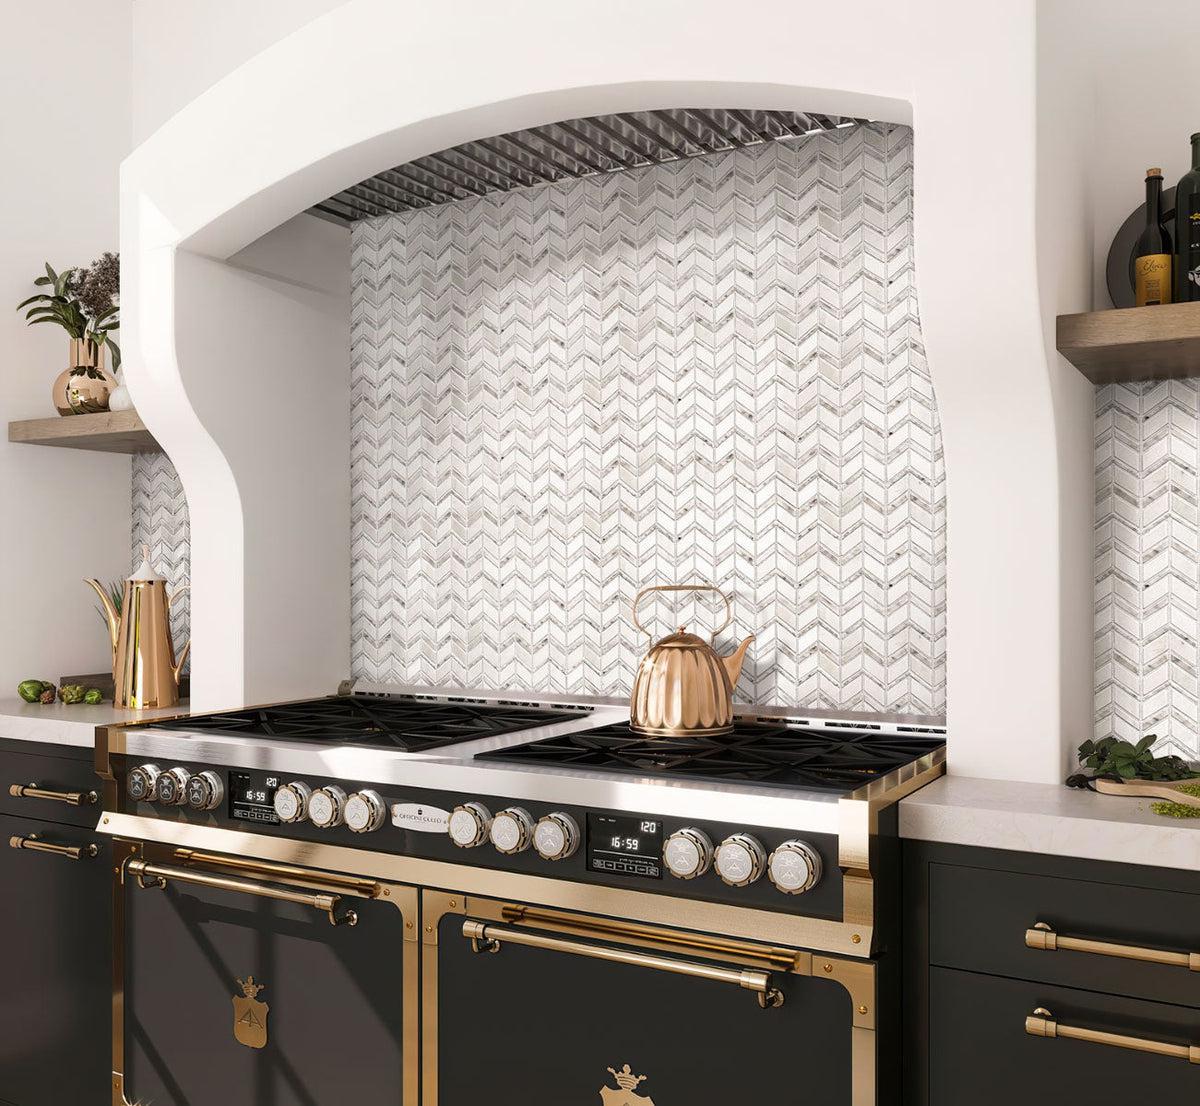 Metropolitan Chevron Marble Mosaic Tile kitchen backsplash